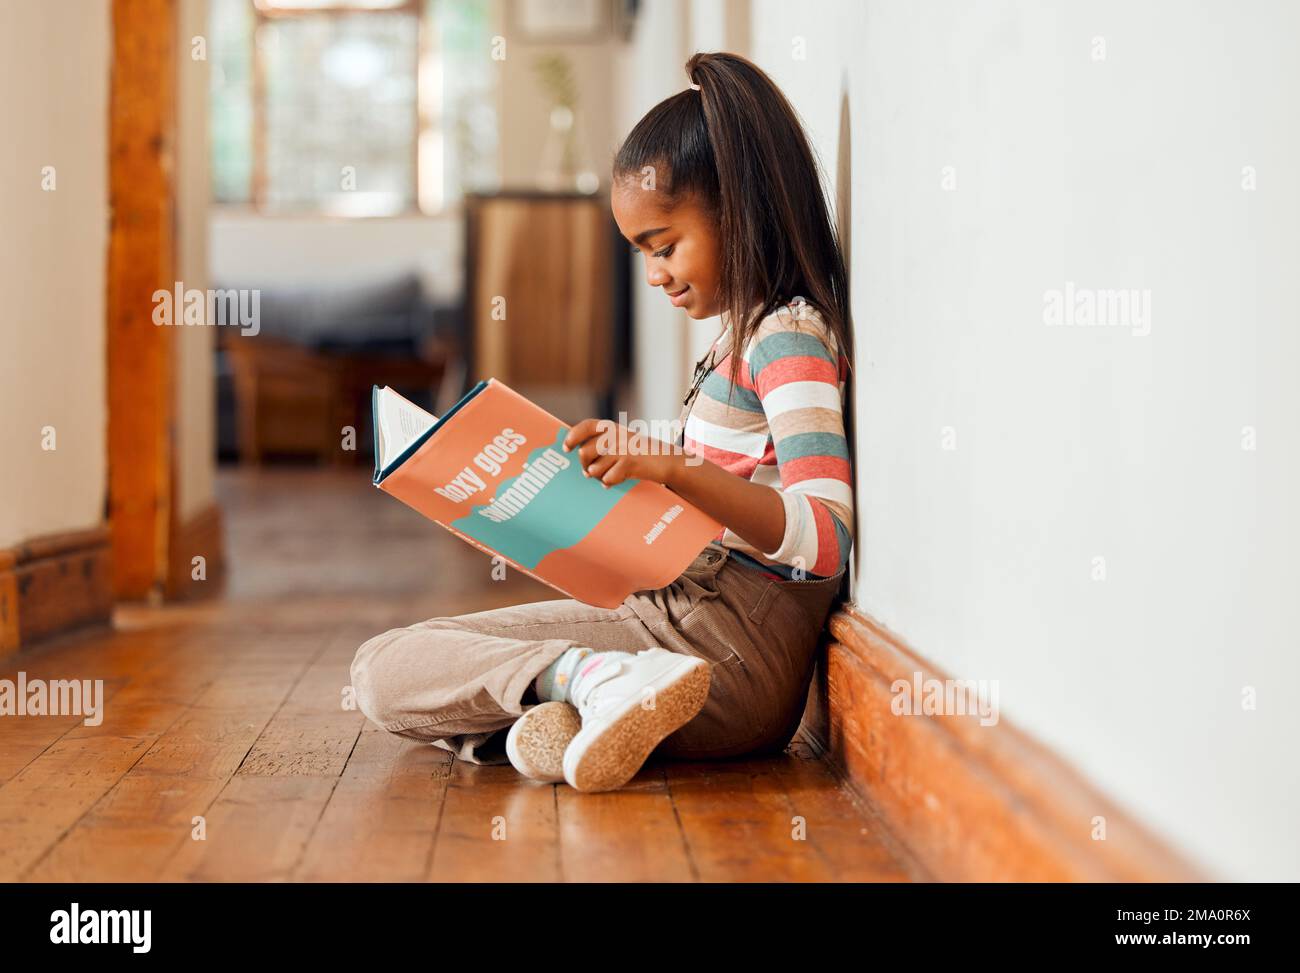 Kleines Mädchen, Buch und Lesen auf Holzboden für Lernen, Bildung oder Geschichtenspaß zu Hause mit einem Lächeln entspannen. Glückliches Kind, das lächelt, sitzt und Stockfoto